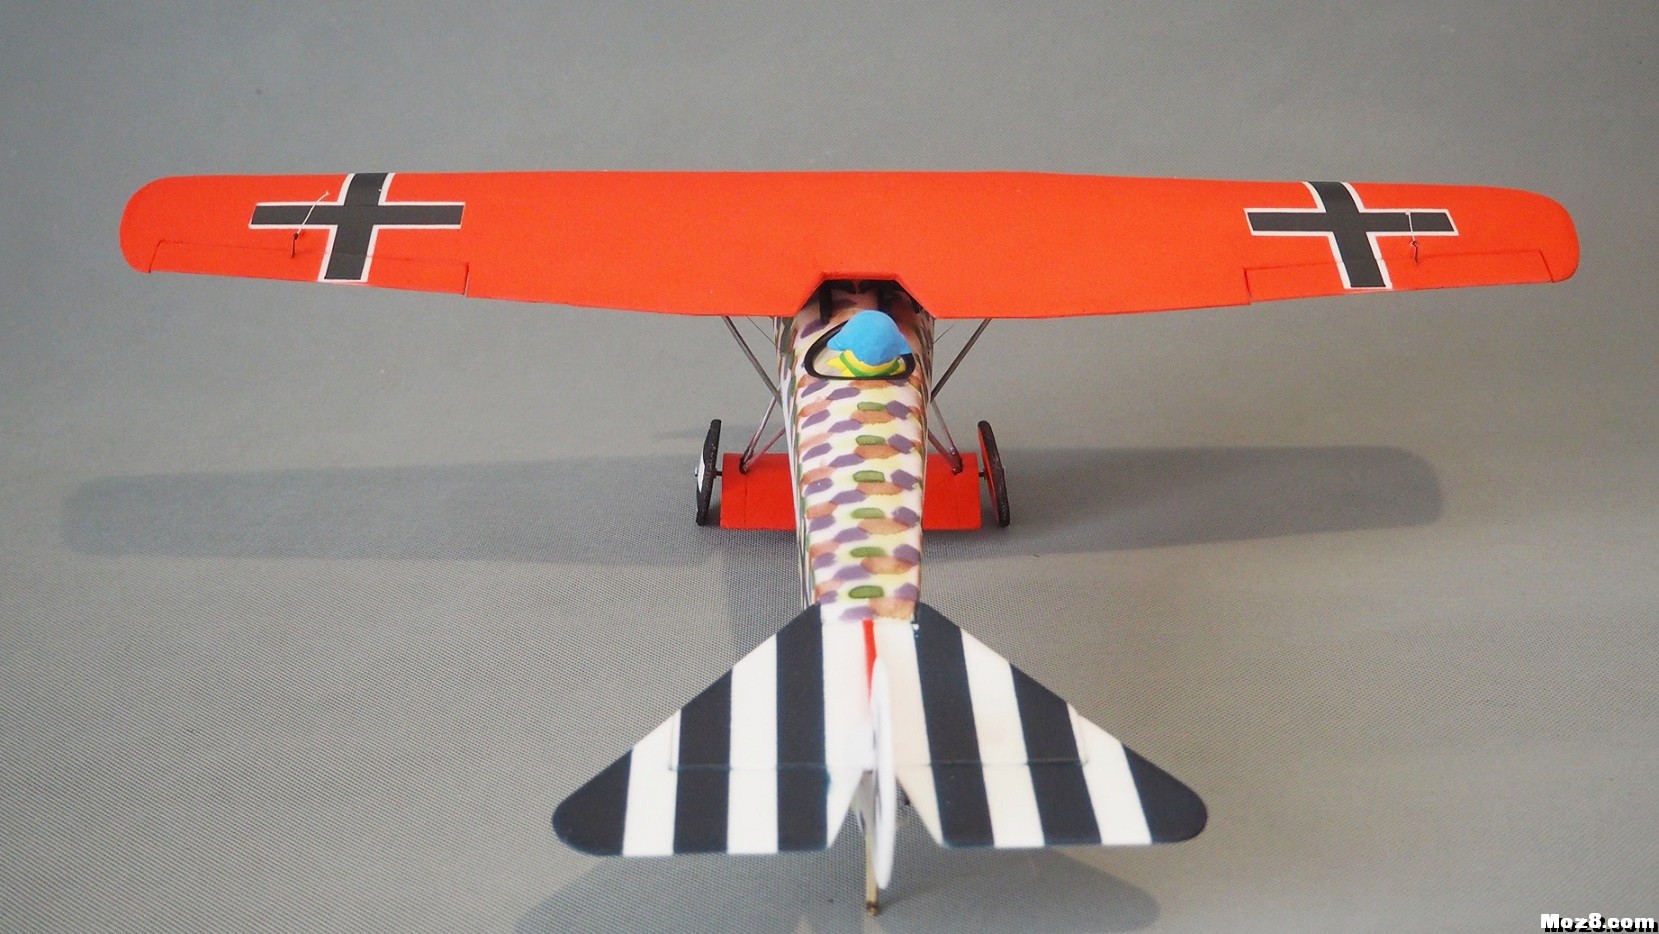 【爱因制造】迷你Fokker D-VIII战机 舵机,接收机,空心杯,bilibili,视频 作者:xbnlkdbxl 9286 